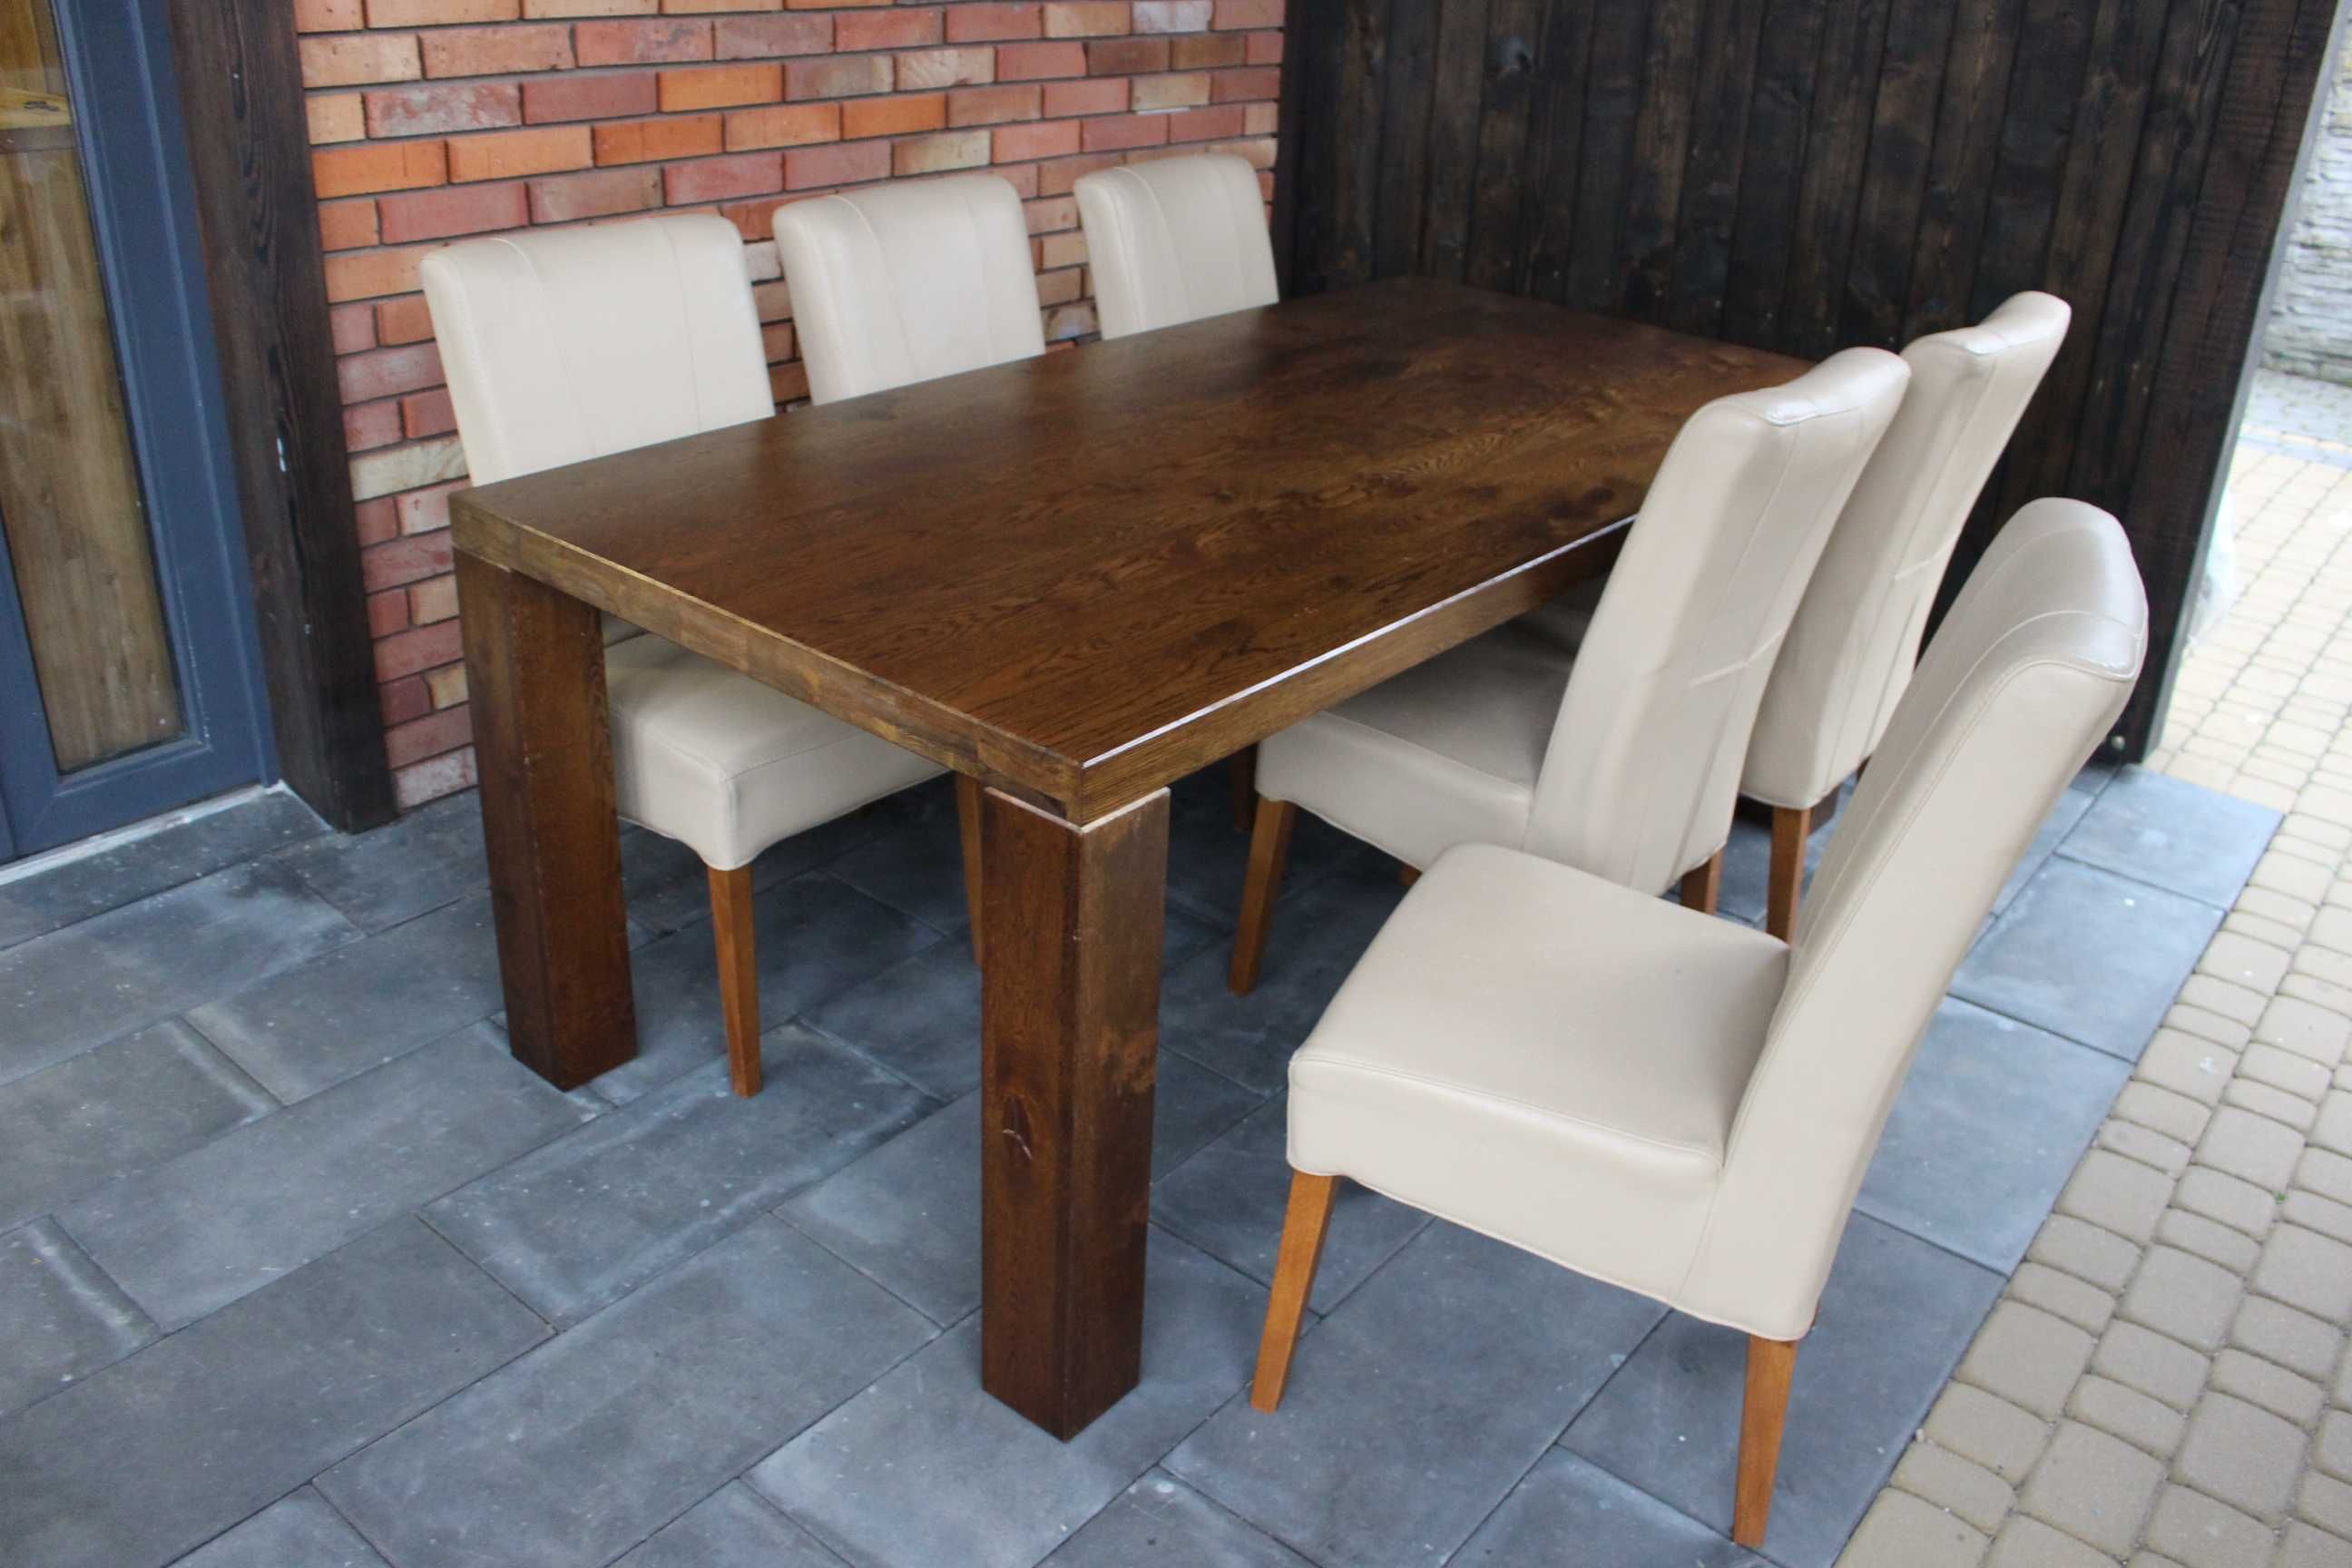 Stół dębowy + 6 skórzanych krzeseł / meble holenderskie